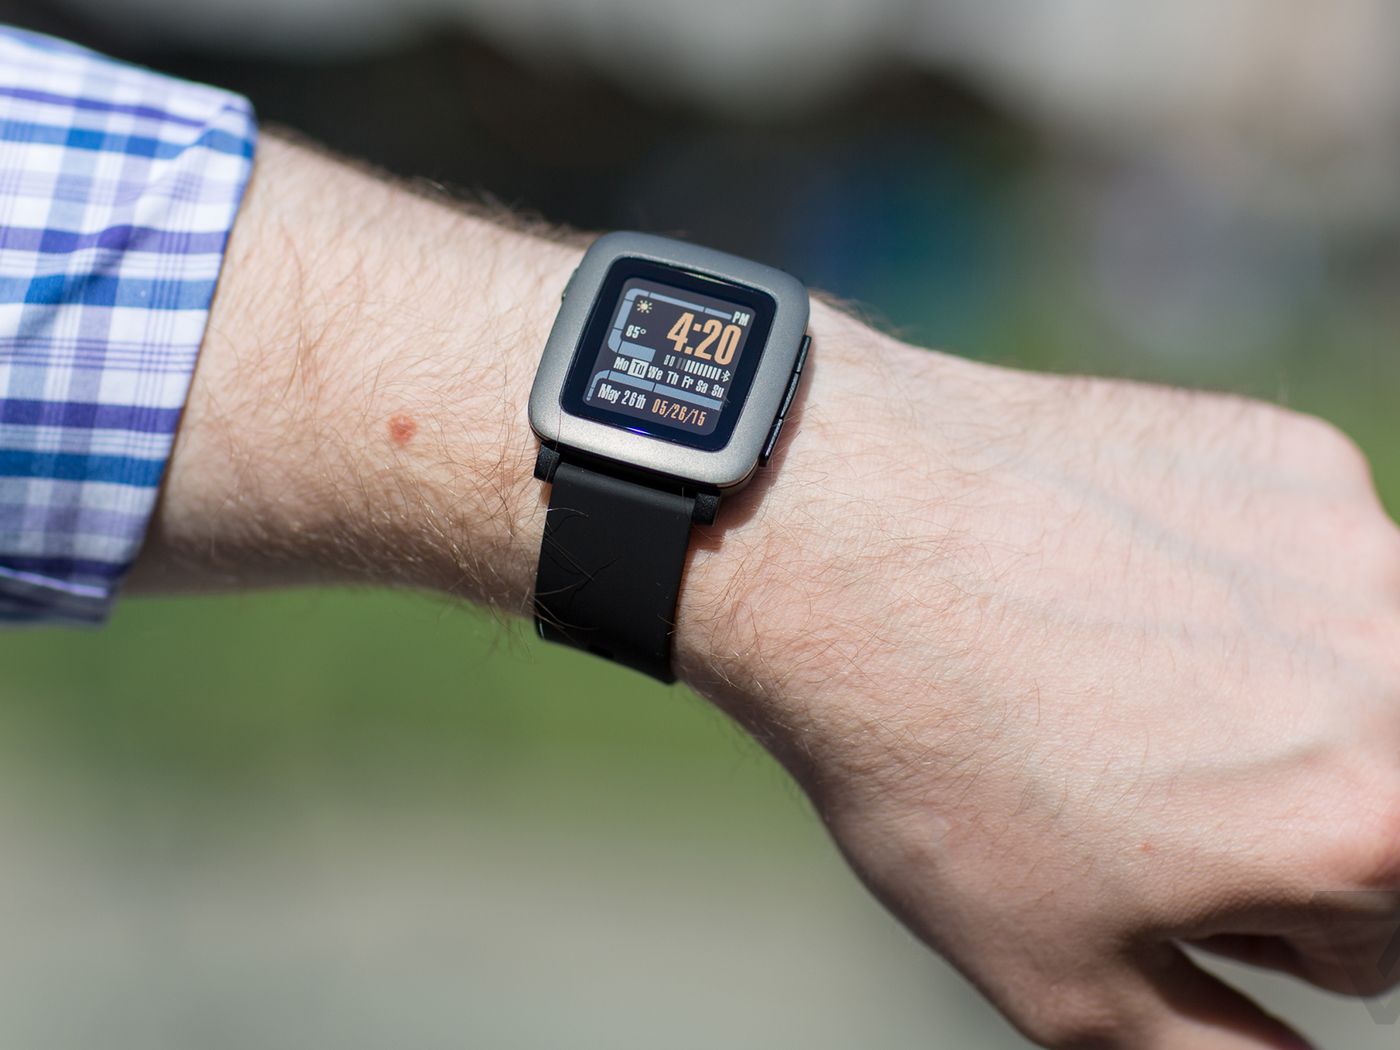 The watch demo from Kickstarter